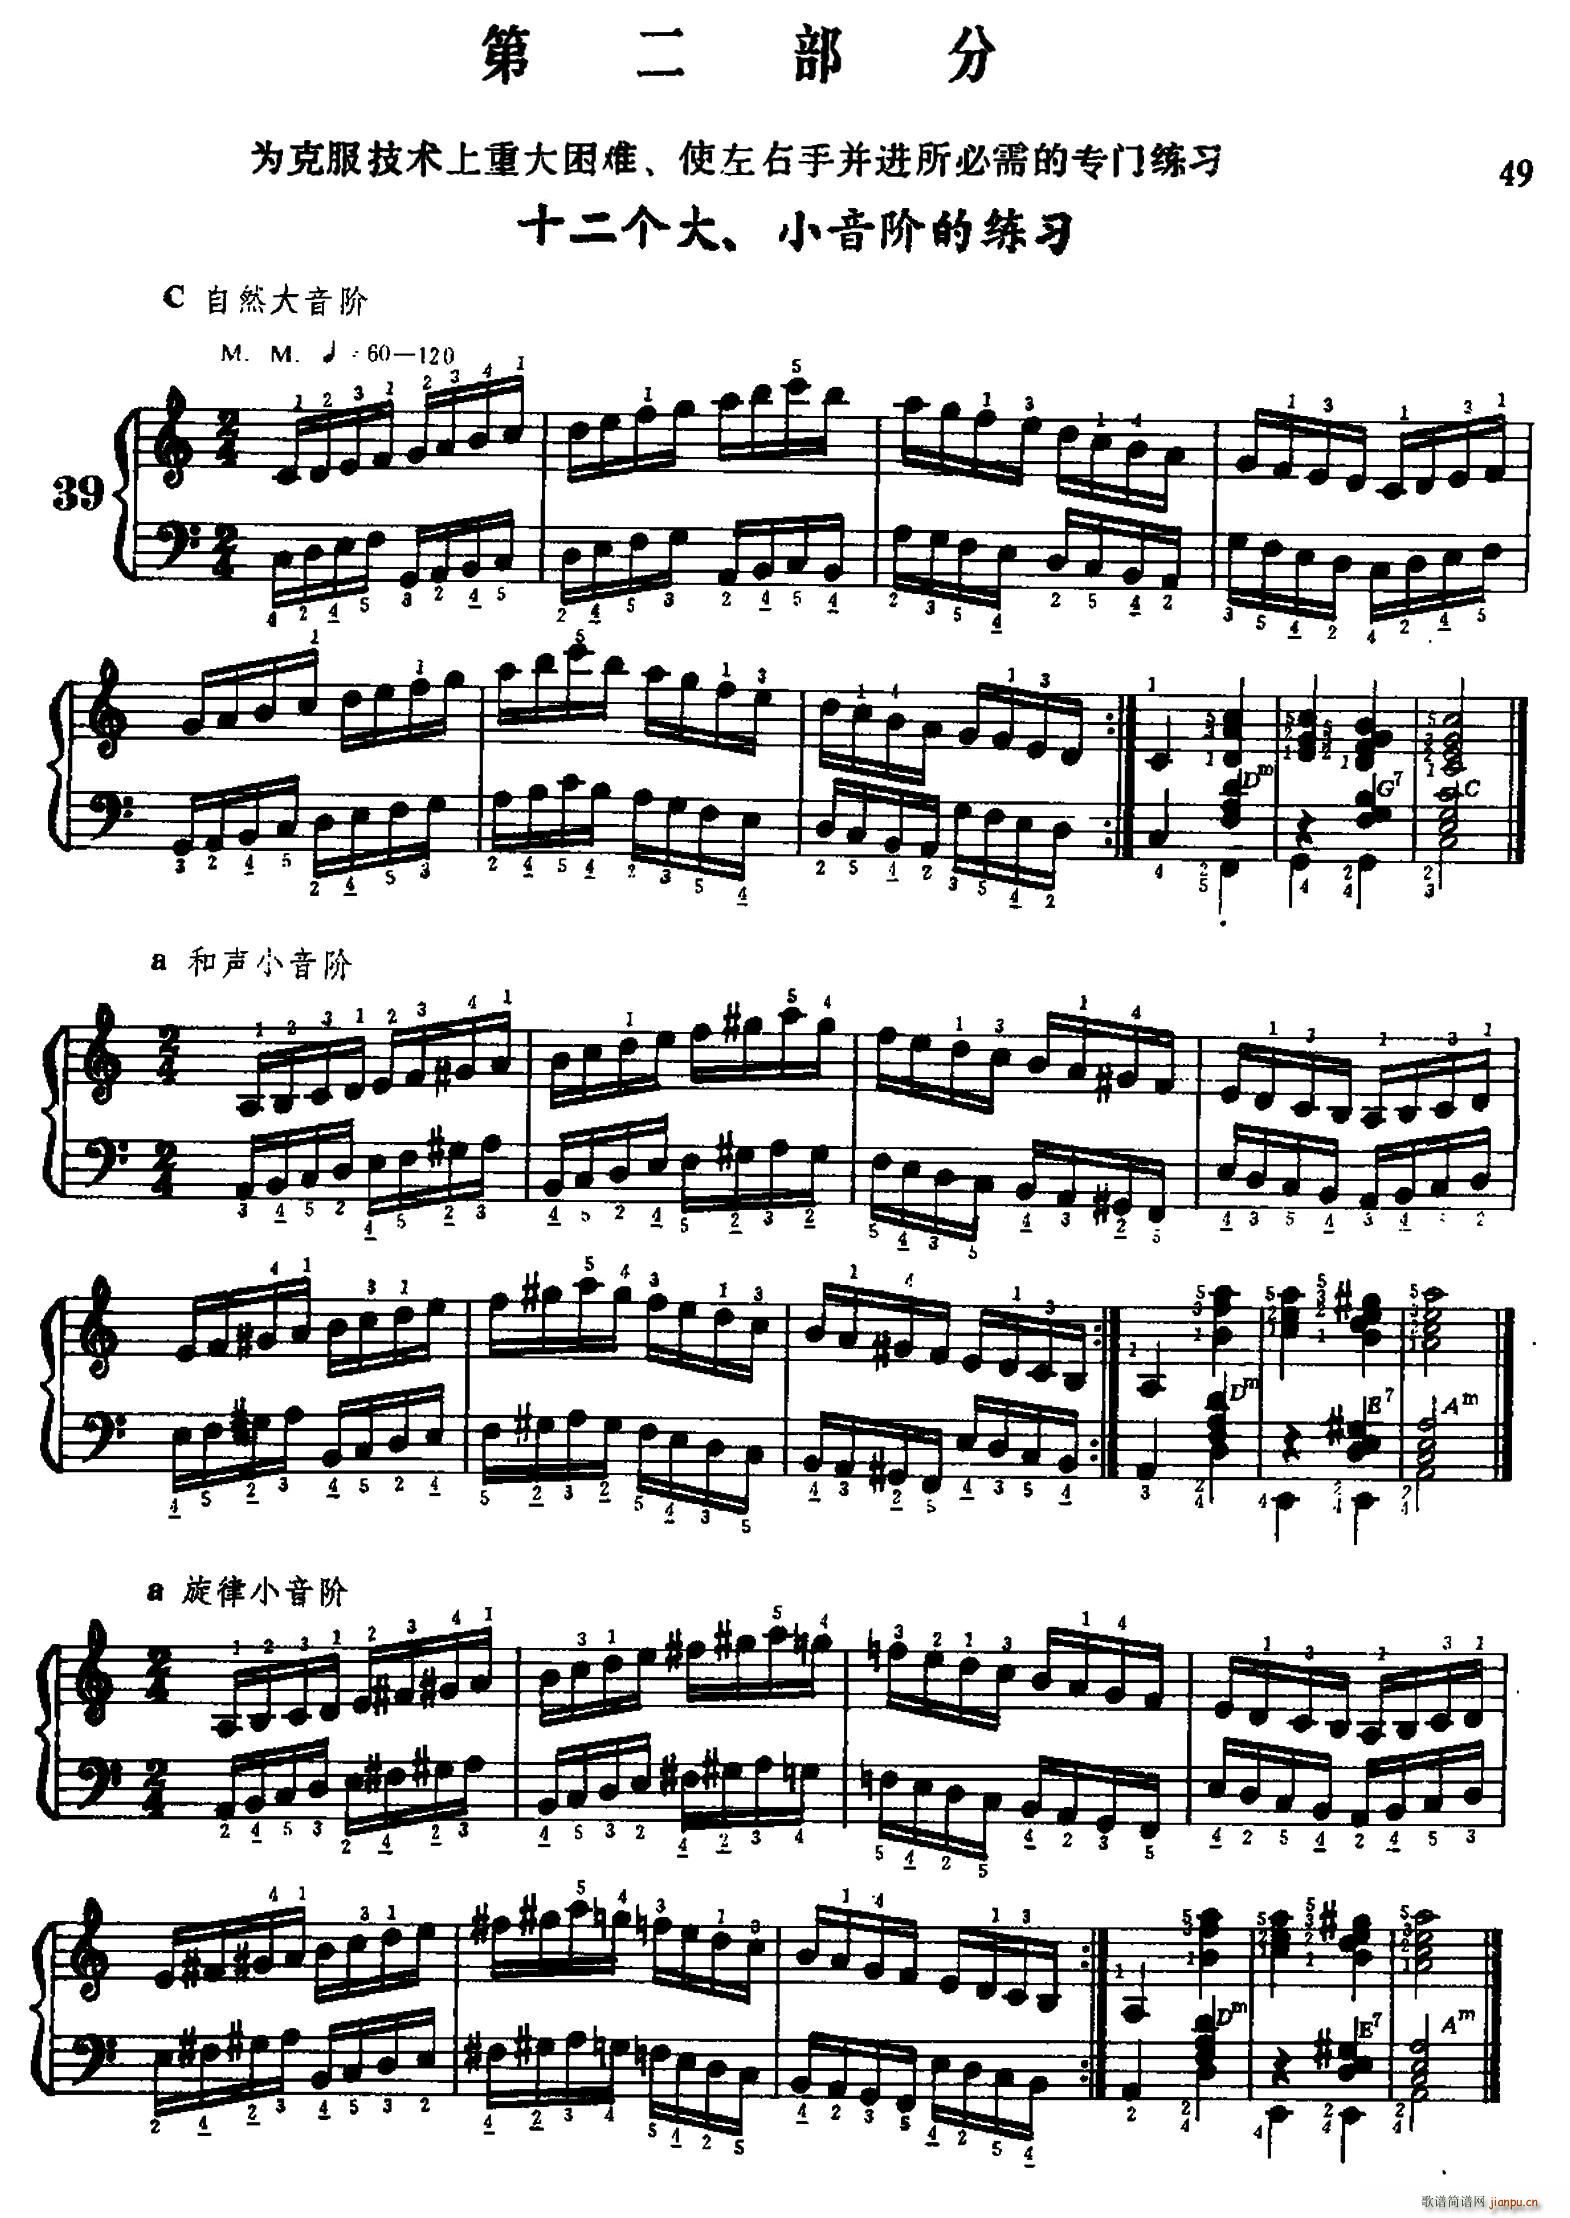 手风琴手指练习 第二部分 十二个大 小音阶的练习(手风琴谱)1